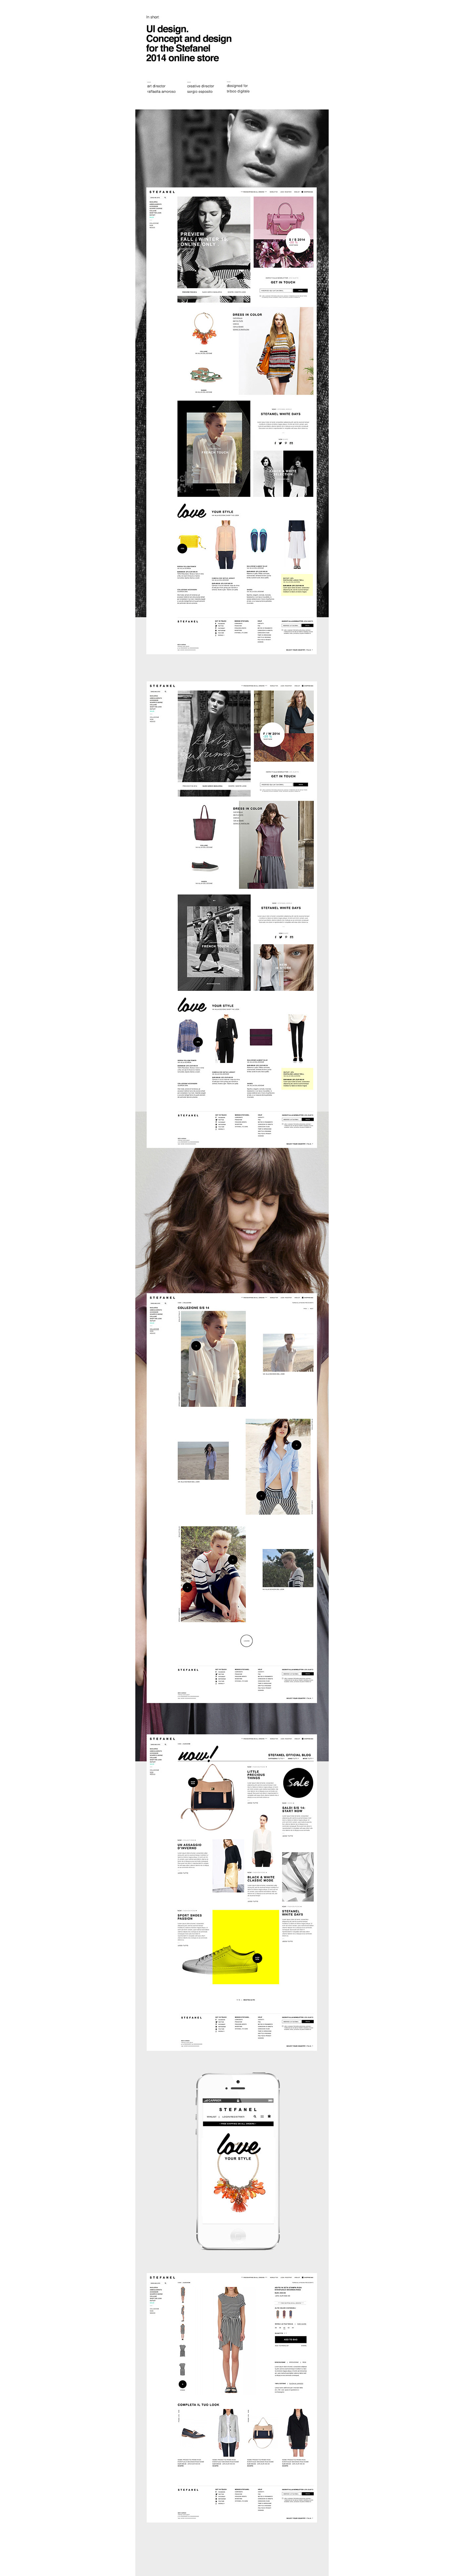 e-commerce Ecommerce store Online shop shop online concept Website site fashion site Responsive interface design